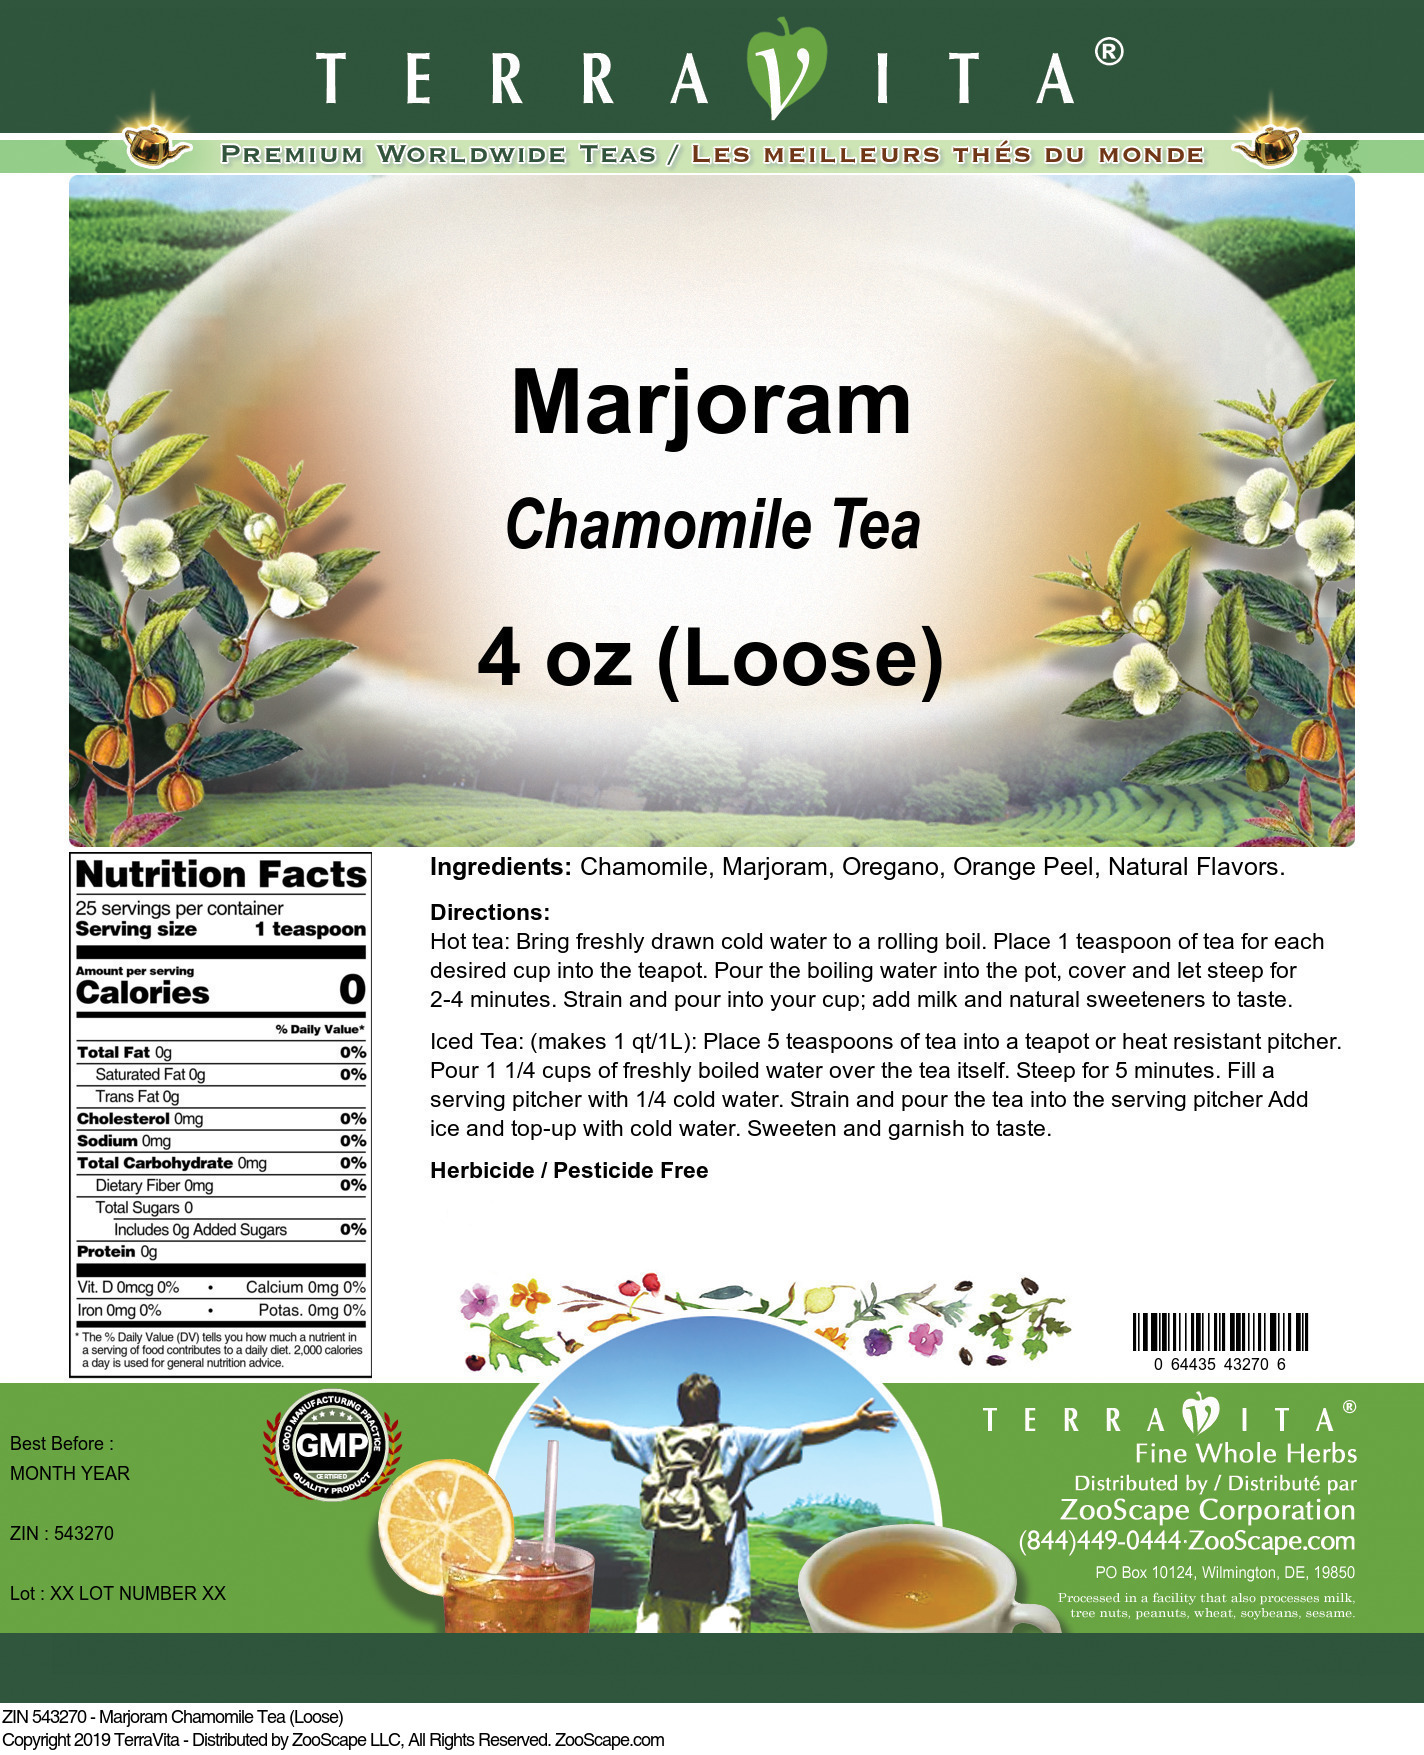 Marjoram Chamomile Tea (Loose) - Label